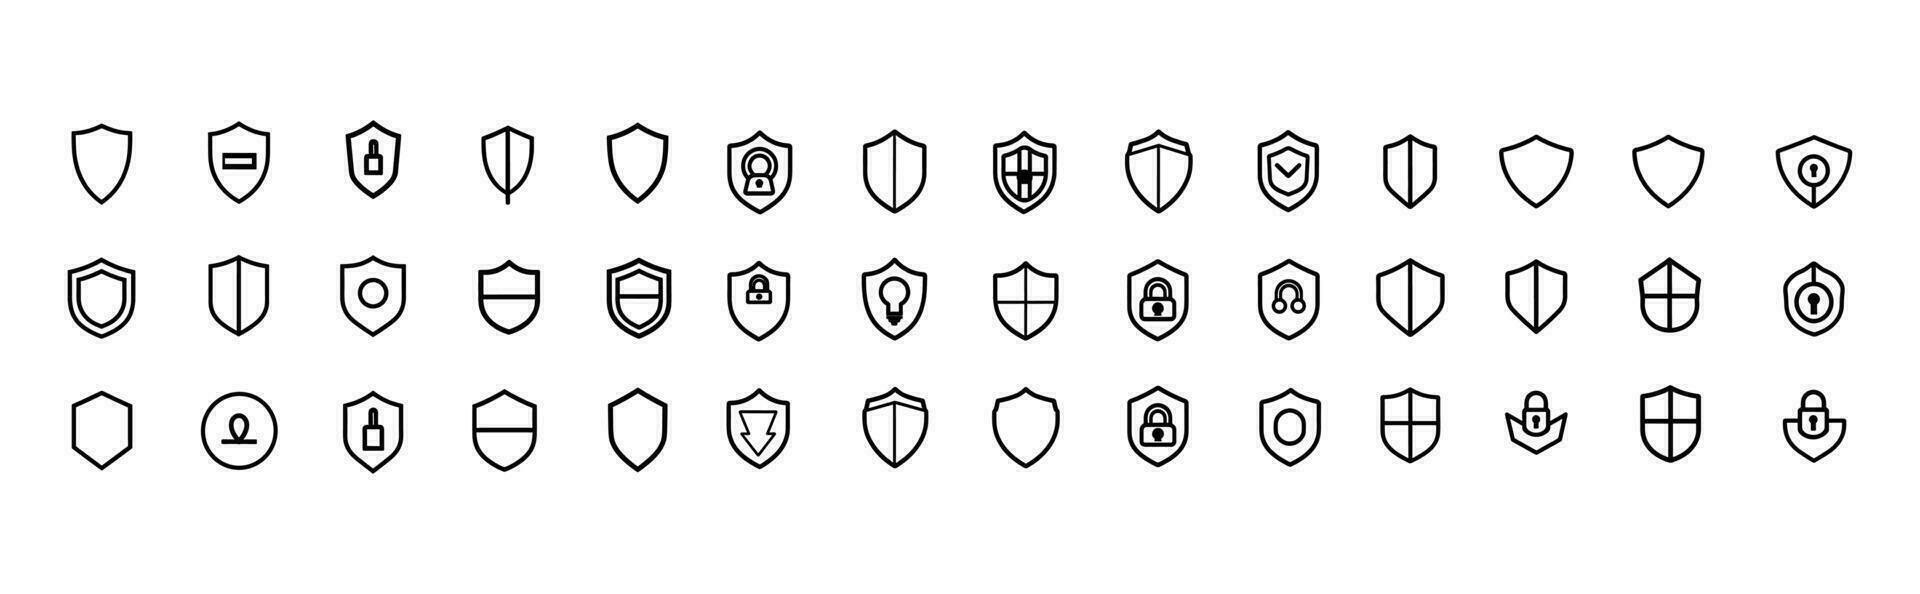 säkerhet skydda ikoner, säkerhet skydda logotyper, kolla upp mark hänglås, skydda symboler, vektor illustration, skydda skydda säkerhet, samling, vektor uppsättning, skydda ikon uppsättning